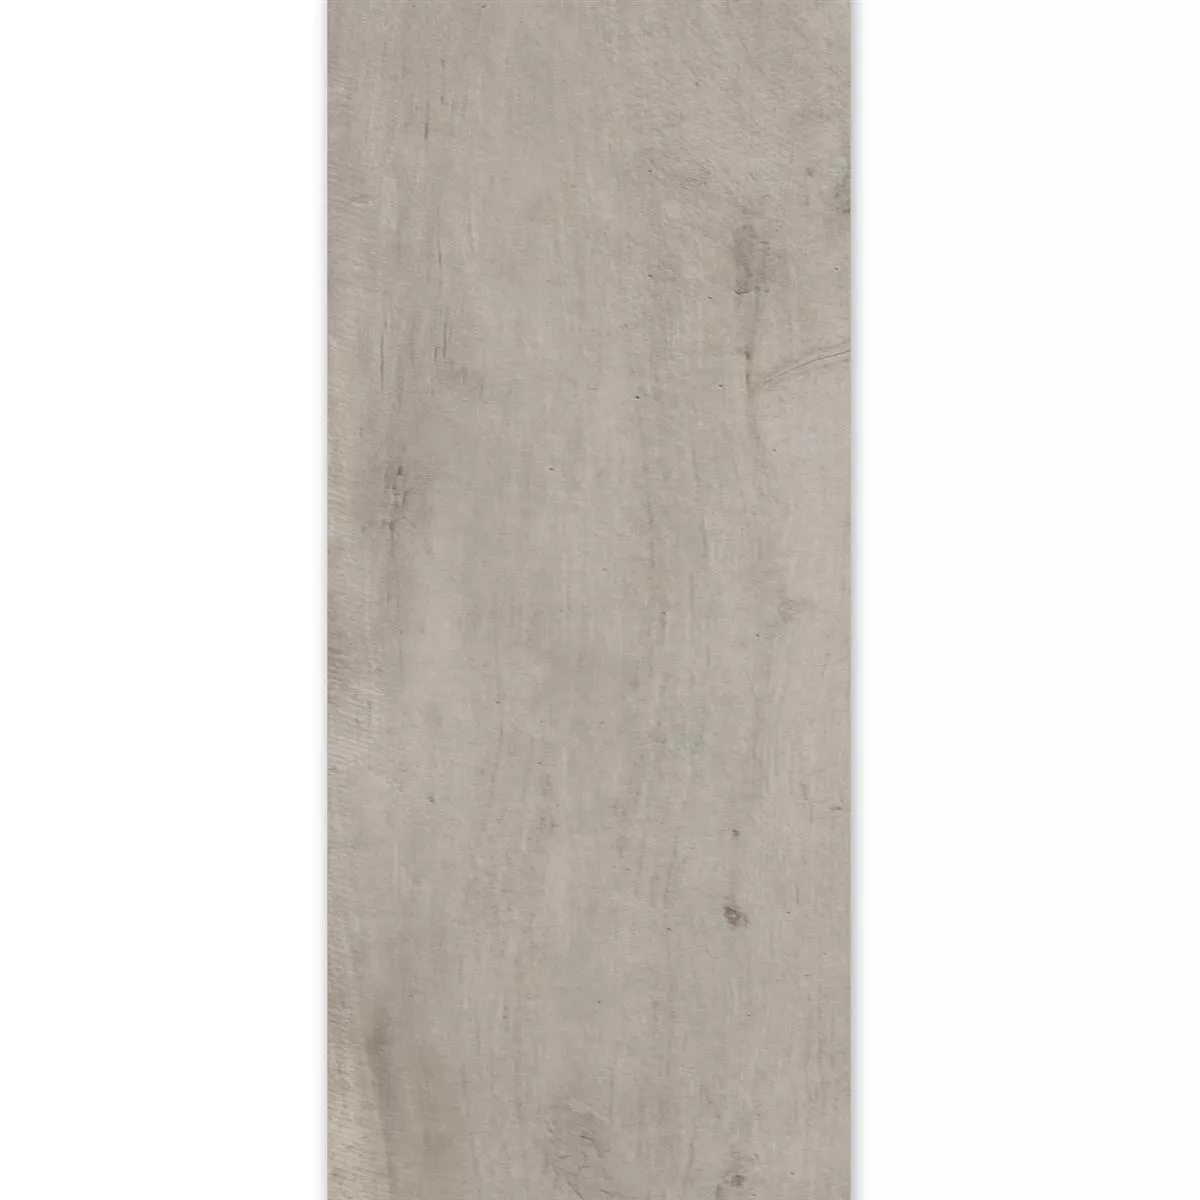 Próbka Płytki Podłogowe Wygląd Drewna Emparrado Biały 30x120cm